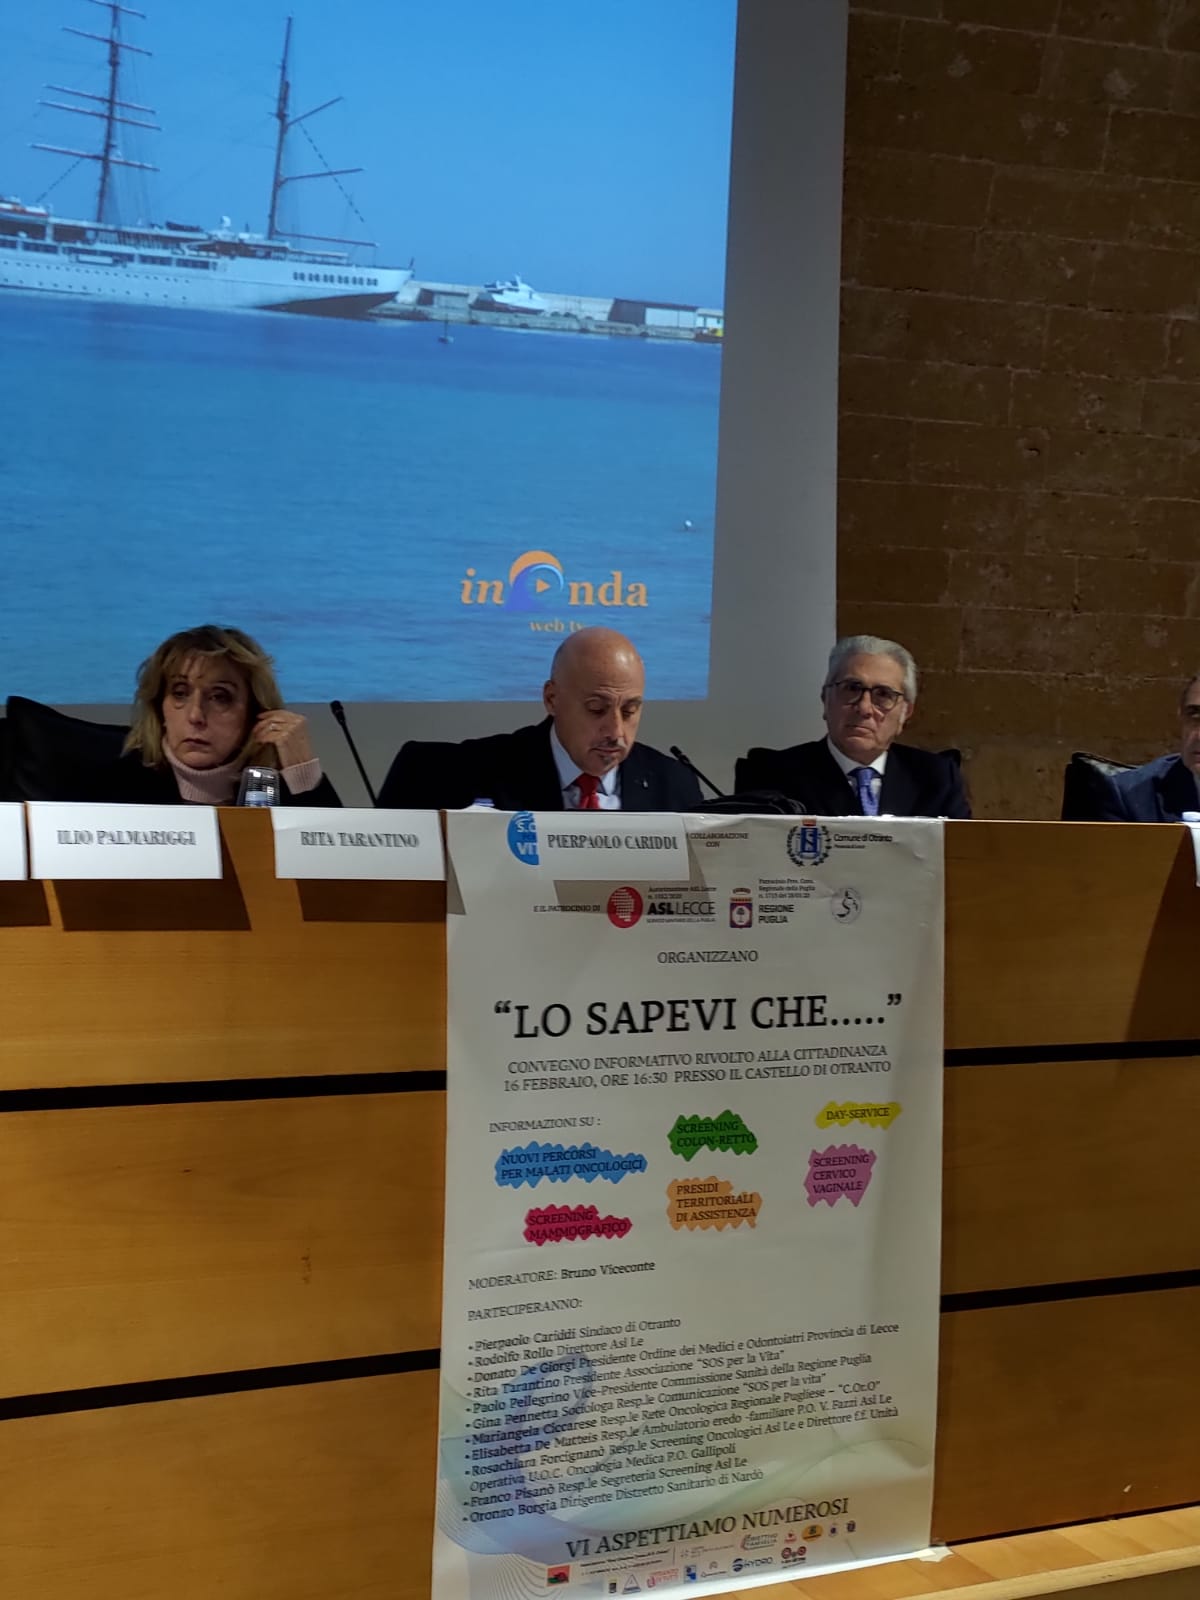 Lecce, lunedì 27 novembre la Conferenza di Ateneo di presentazione del  'Piano di Sostenibilità' nella Sala conferenze del Rettorato